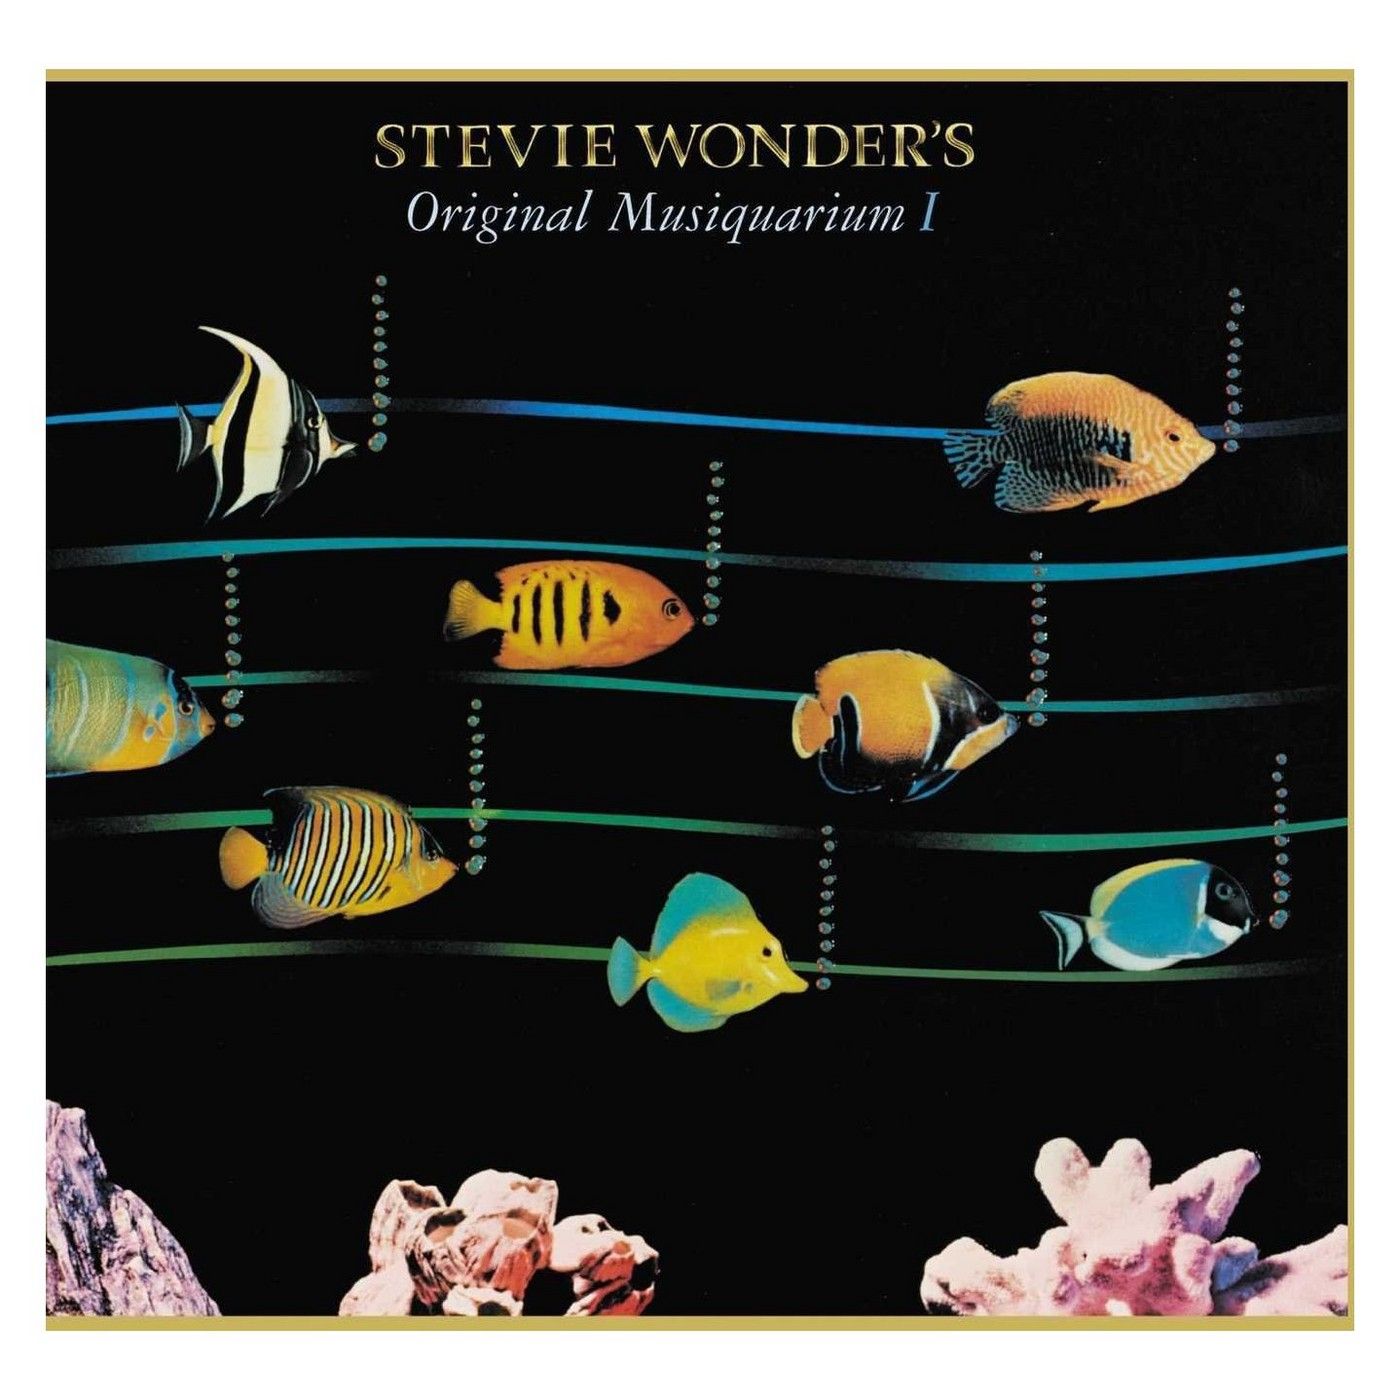 STEVIE WONDER - ORIGINAL MUSIQUARIUM I - LIMITED EDITON - 2-LP - VINYL LP